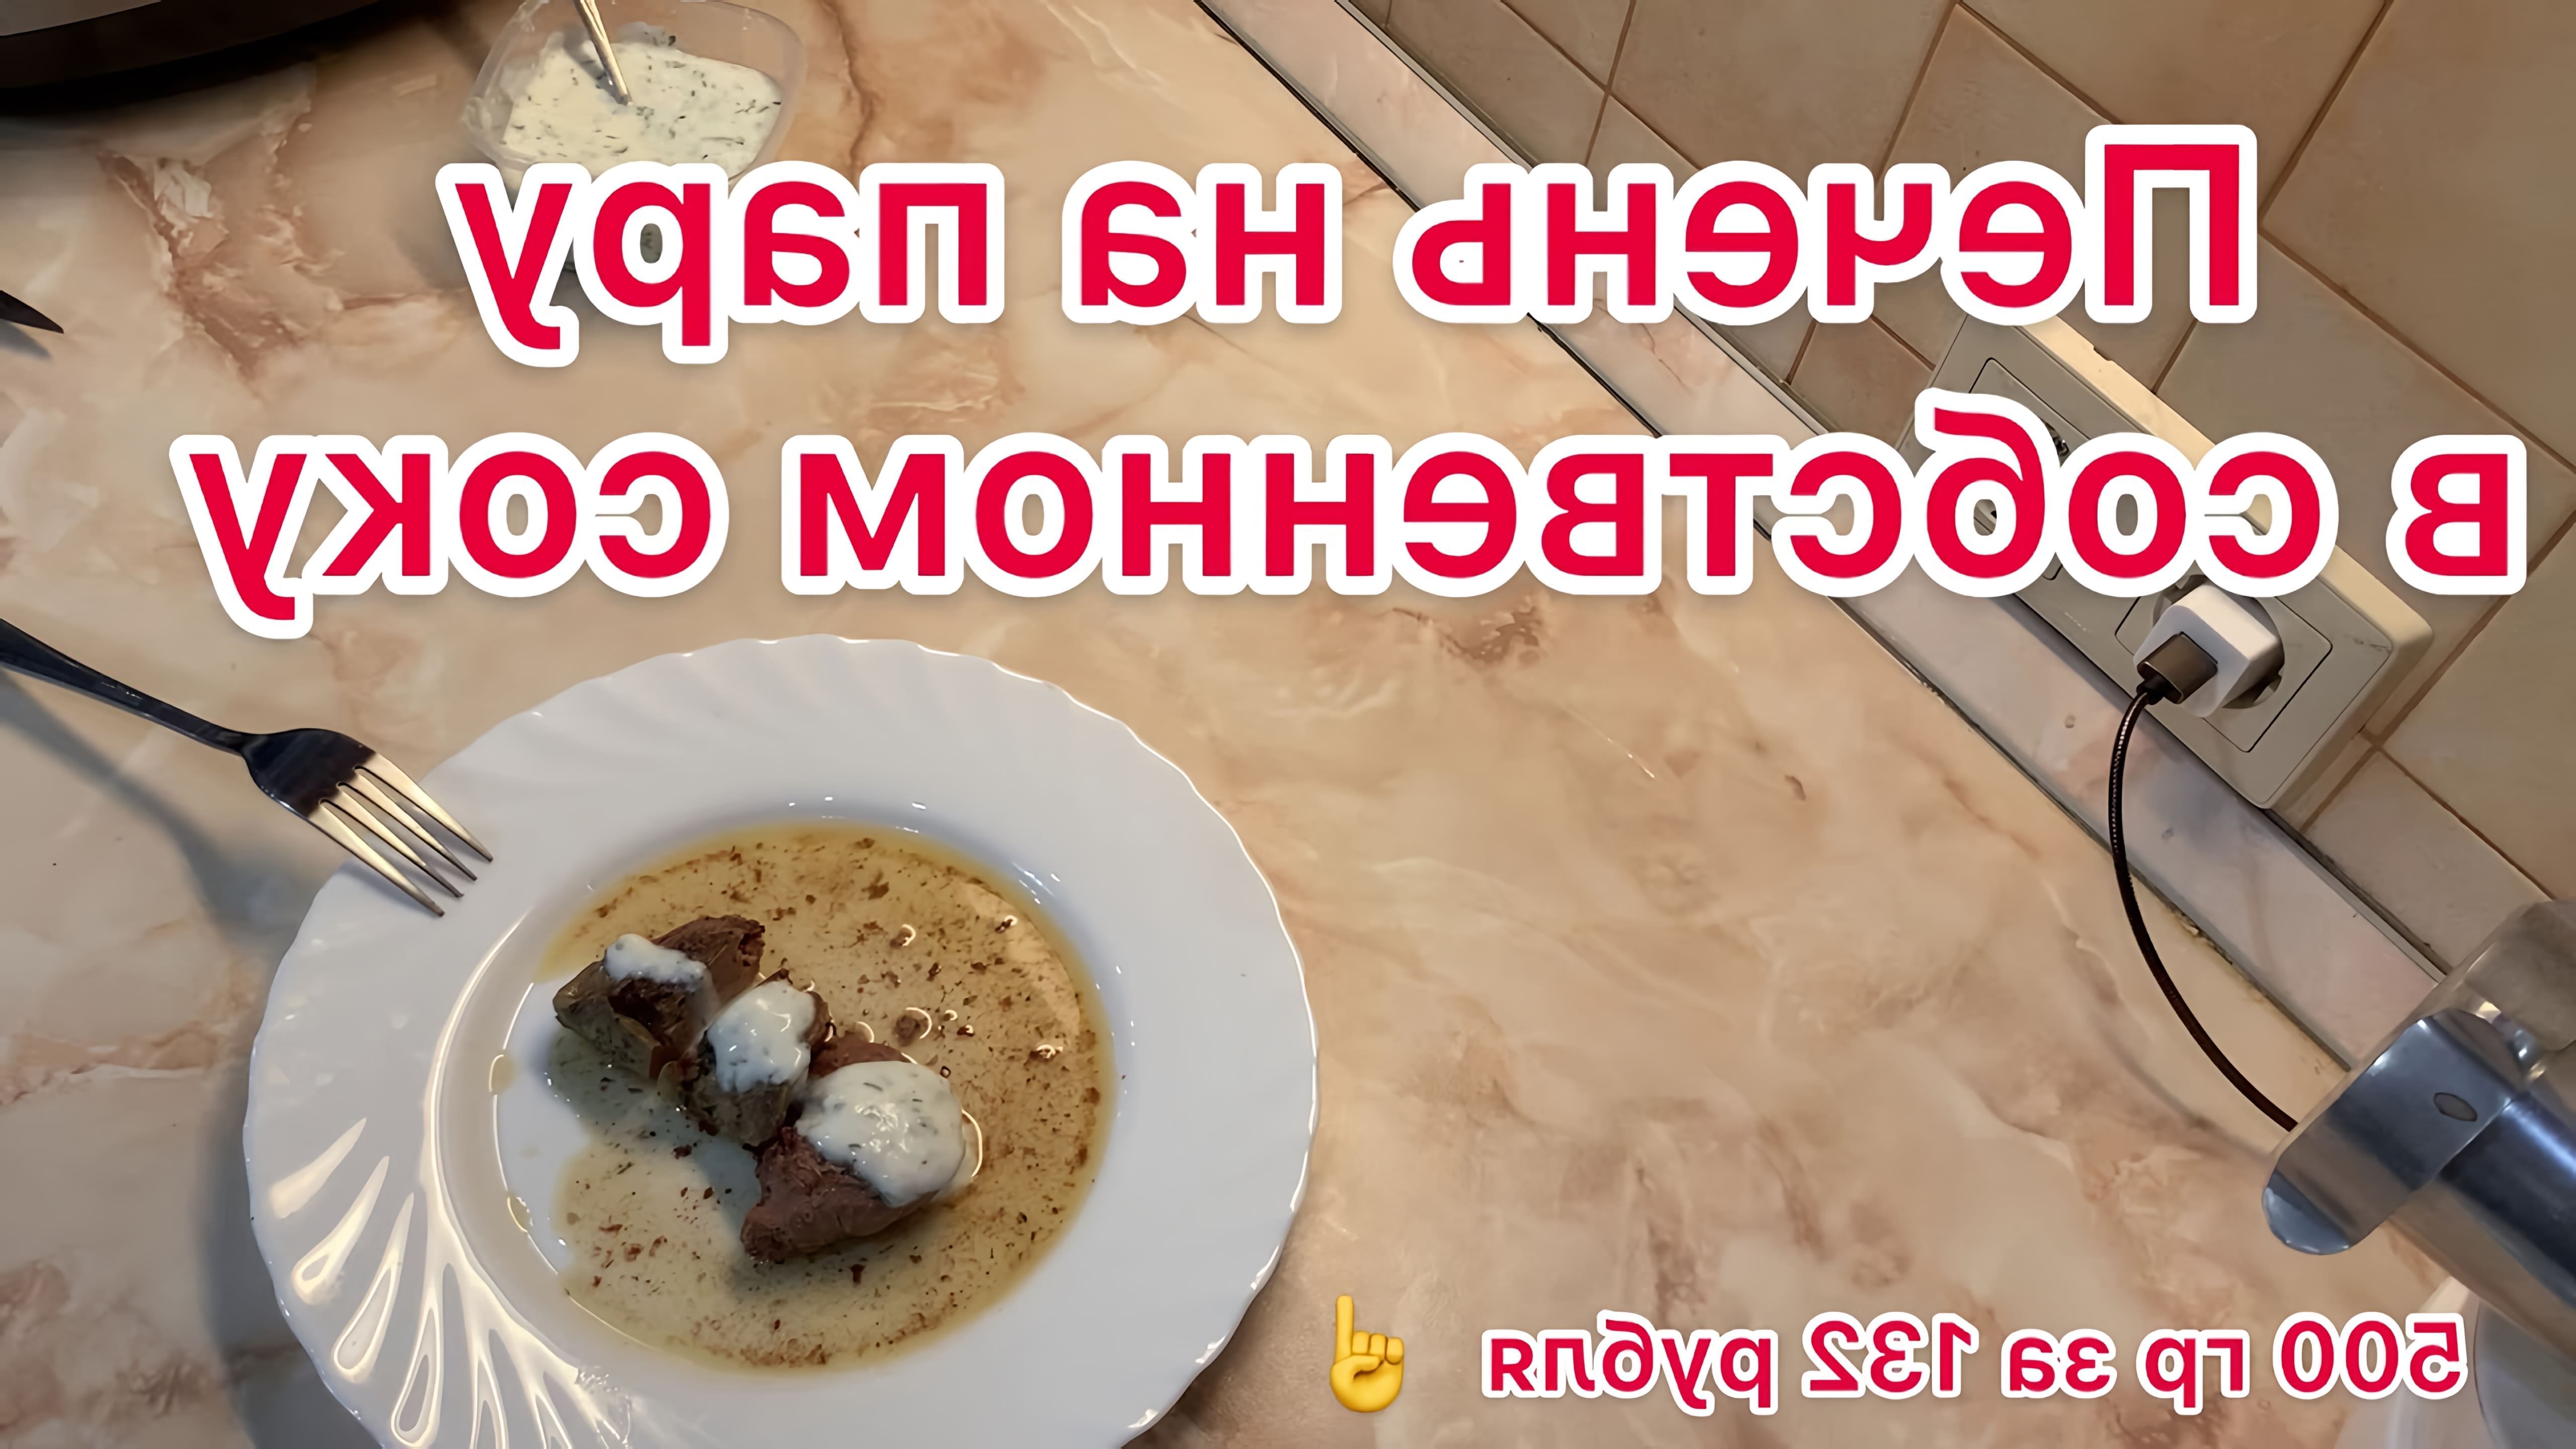 В этом видео демонстрируется рецепт приготовления печени в собственном соку на пару